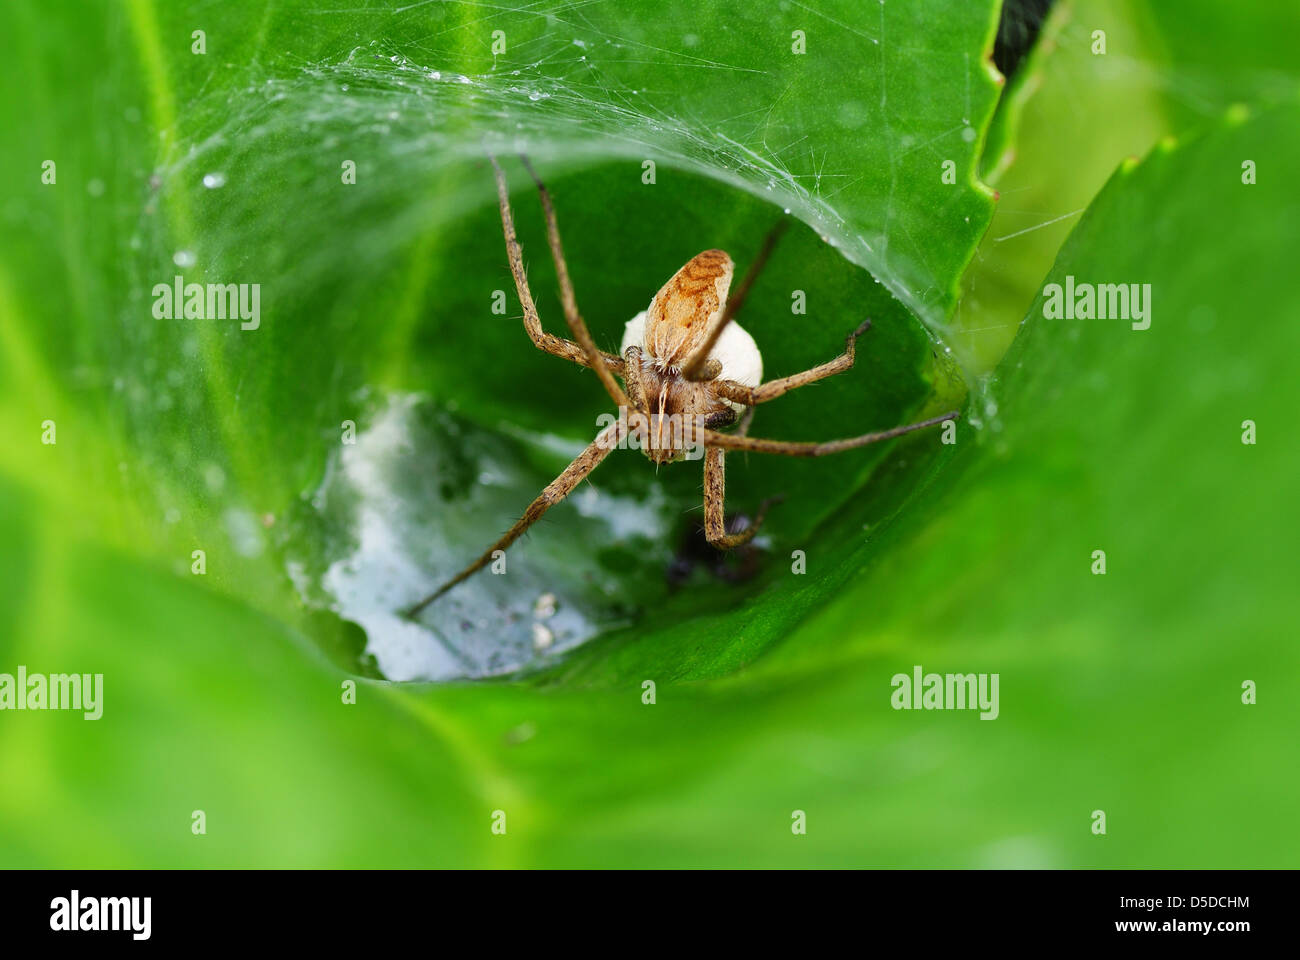 little frightening spider on spiderweb Stock Photo